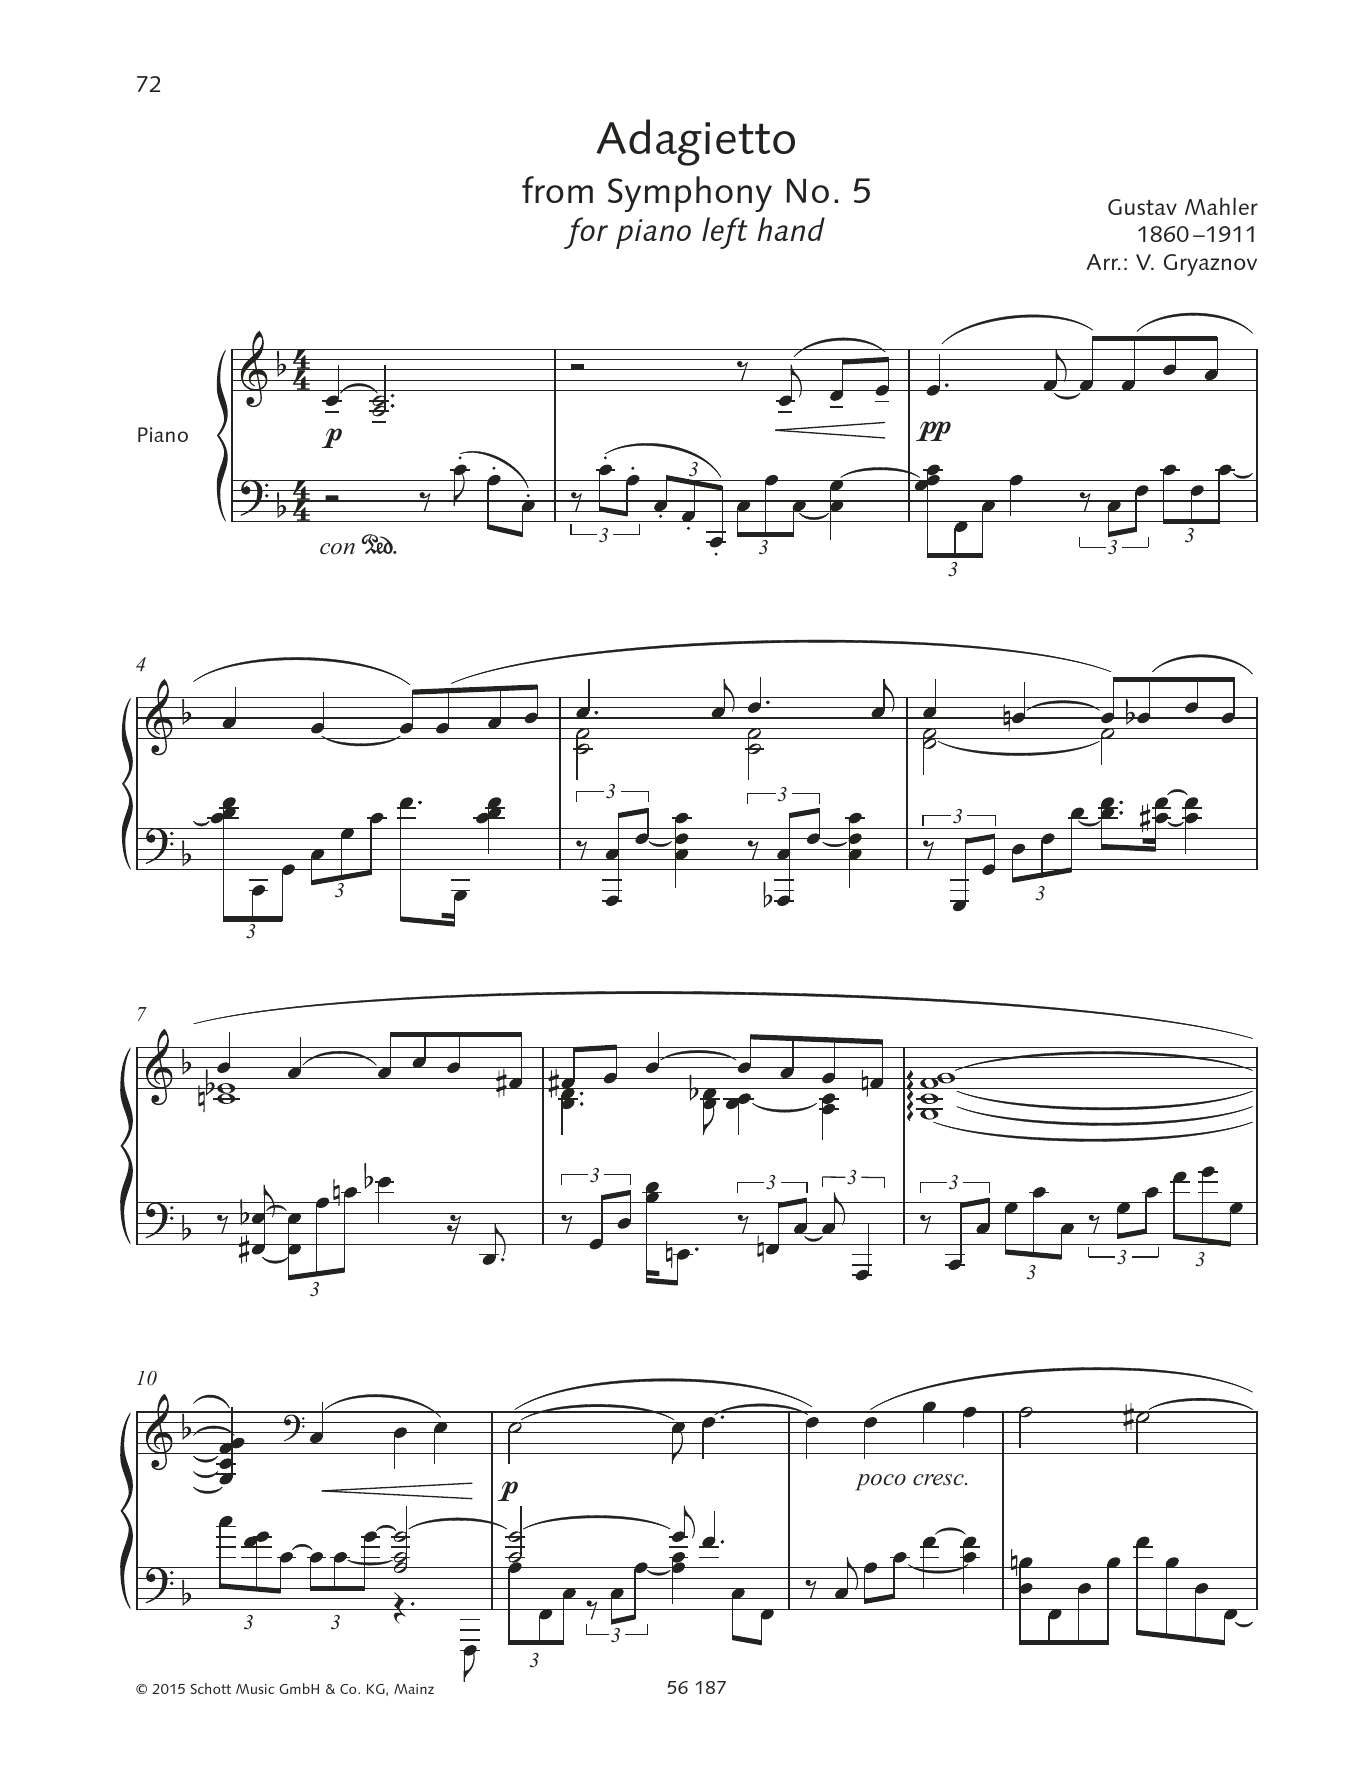 Download Gustav Mahler Adagietto Sheet Music